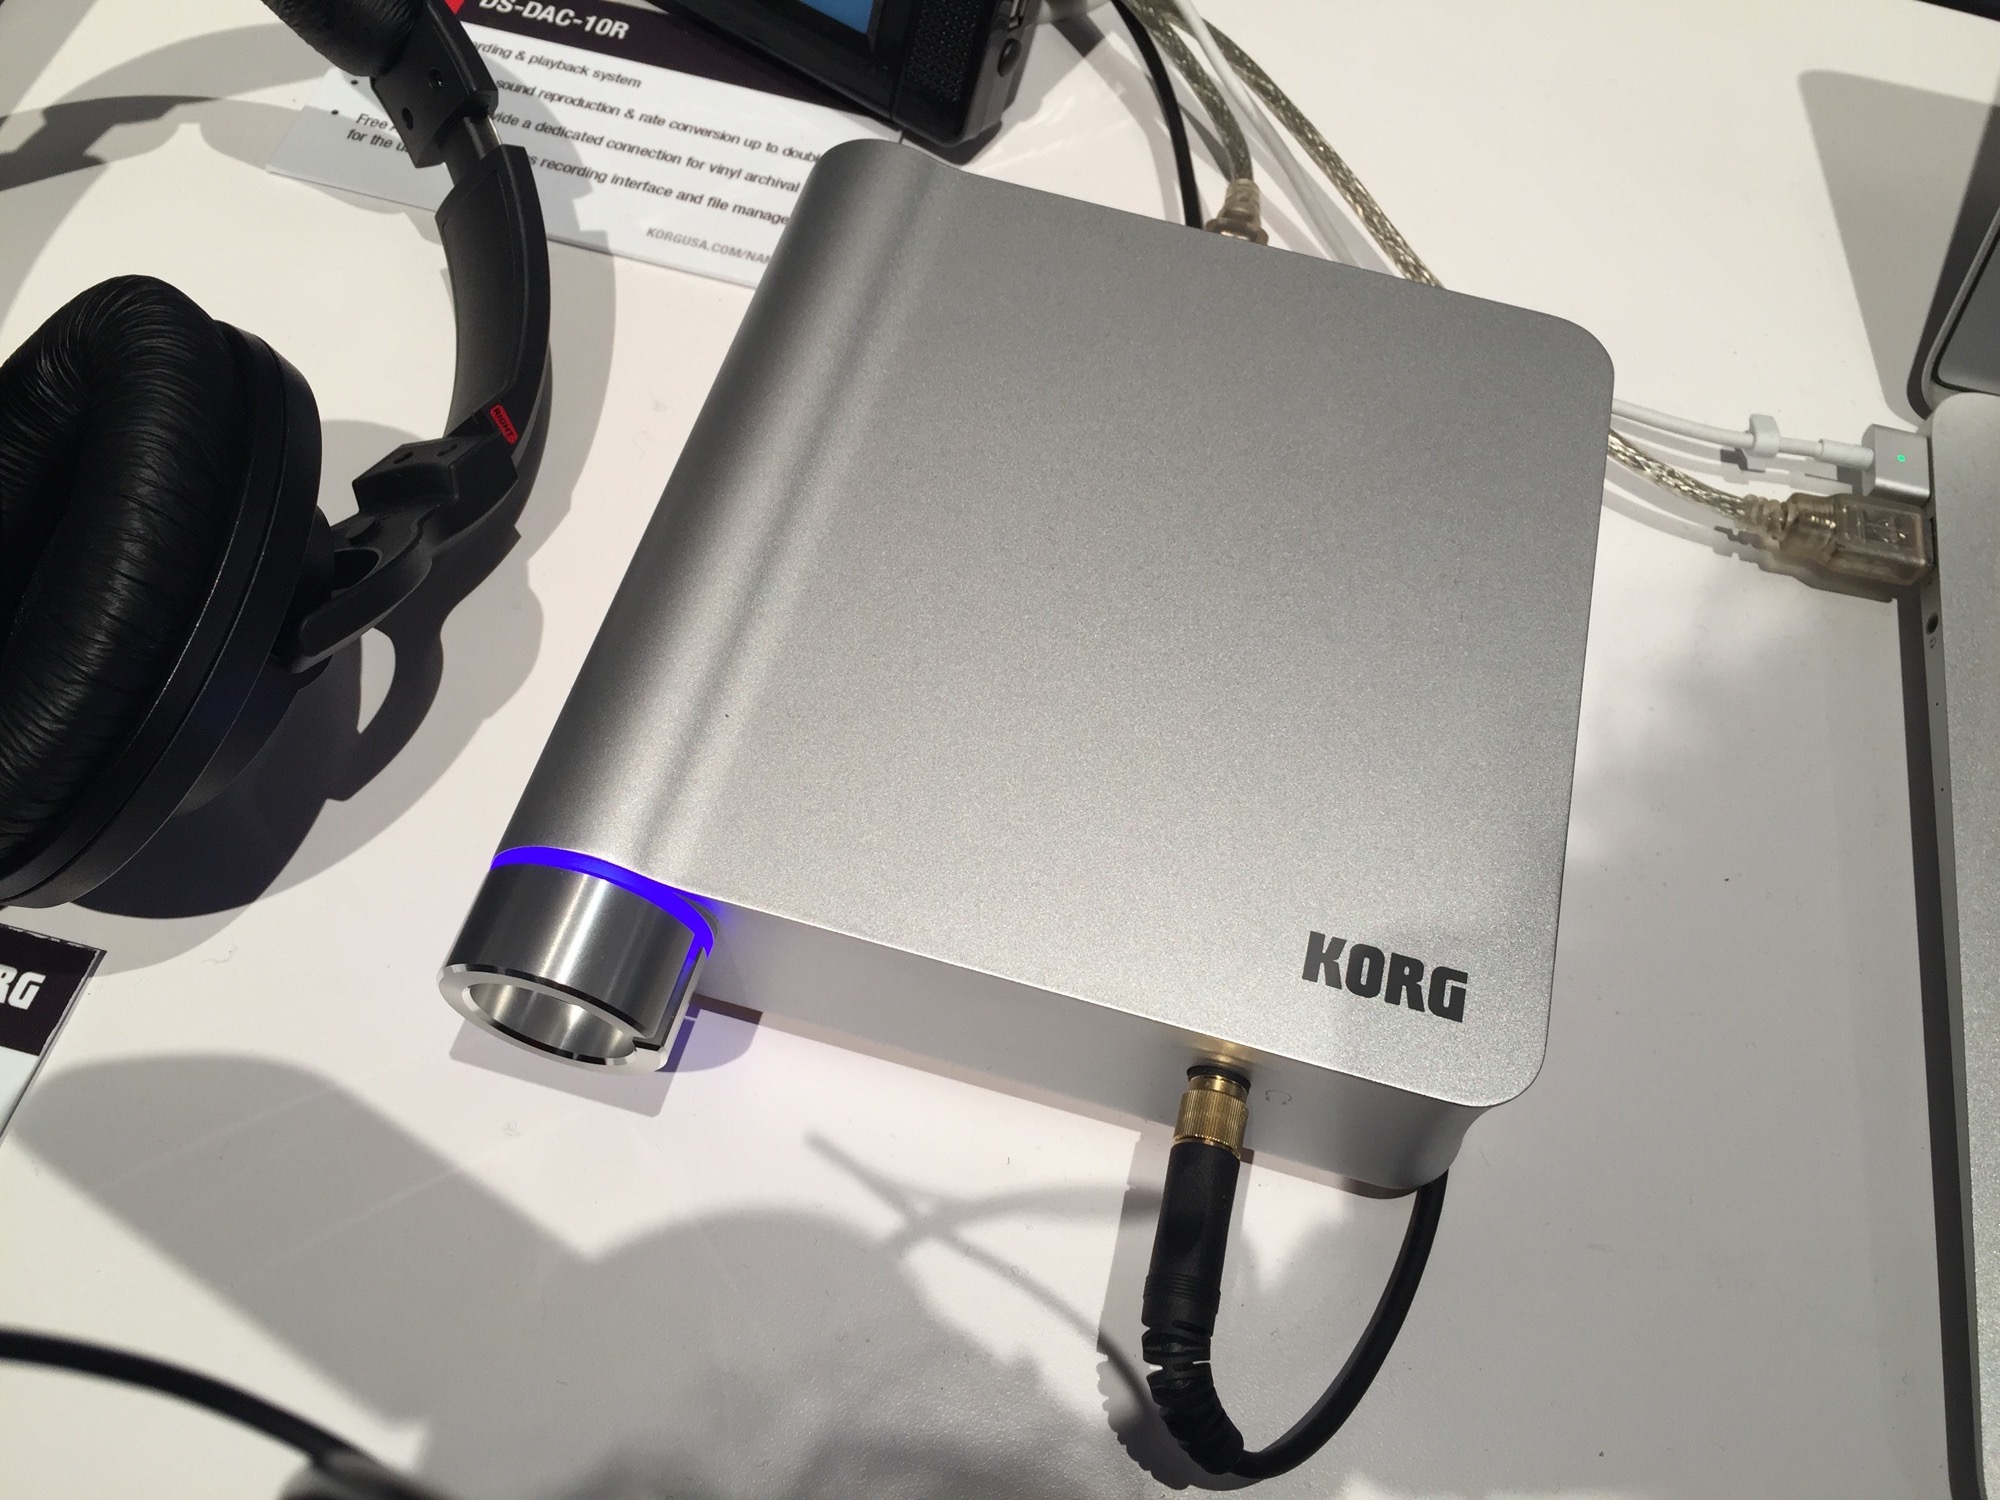 NAMM 2016 展会：Korg DS-DAC-10R 支持DSD 的高品质音频接口第一时间上手- midifan：我们关注电脑音乐